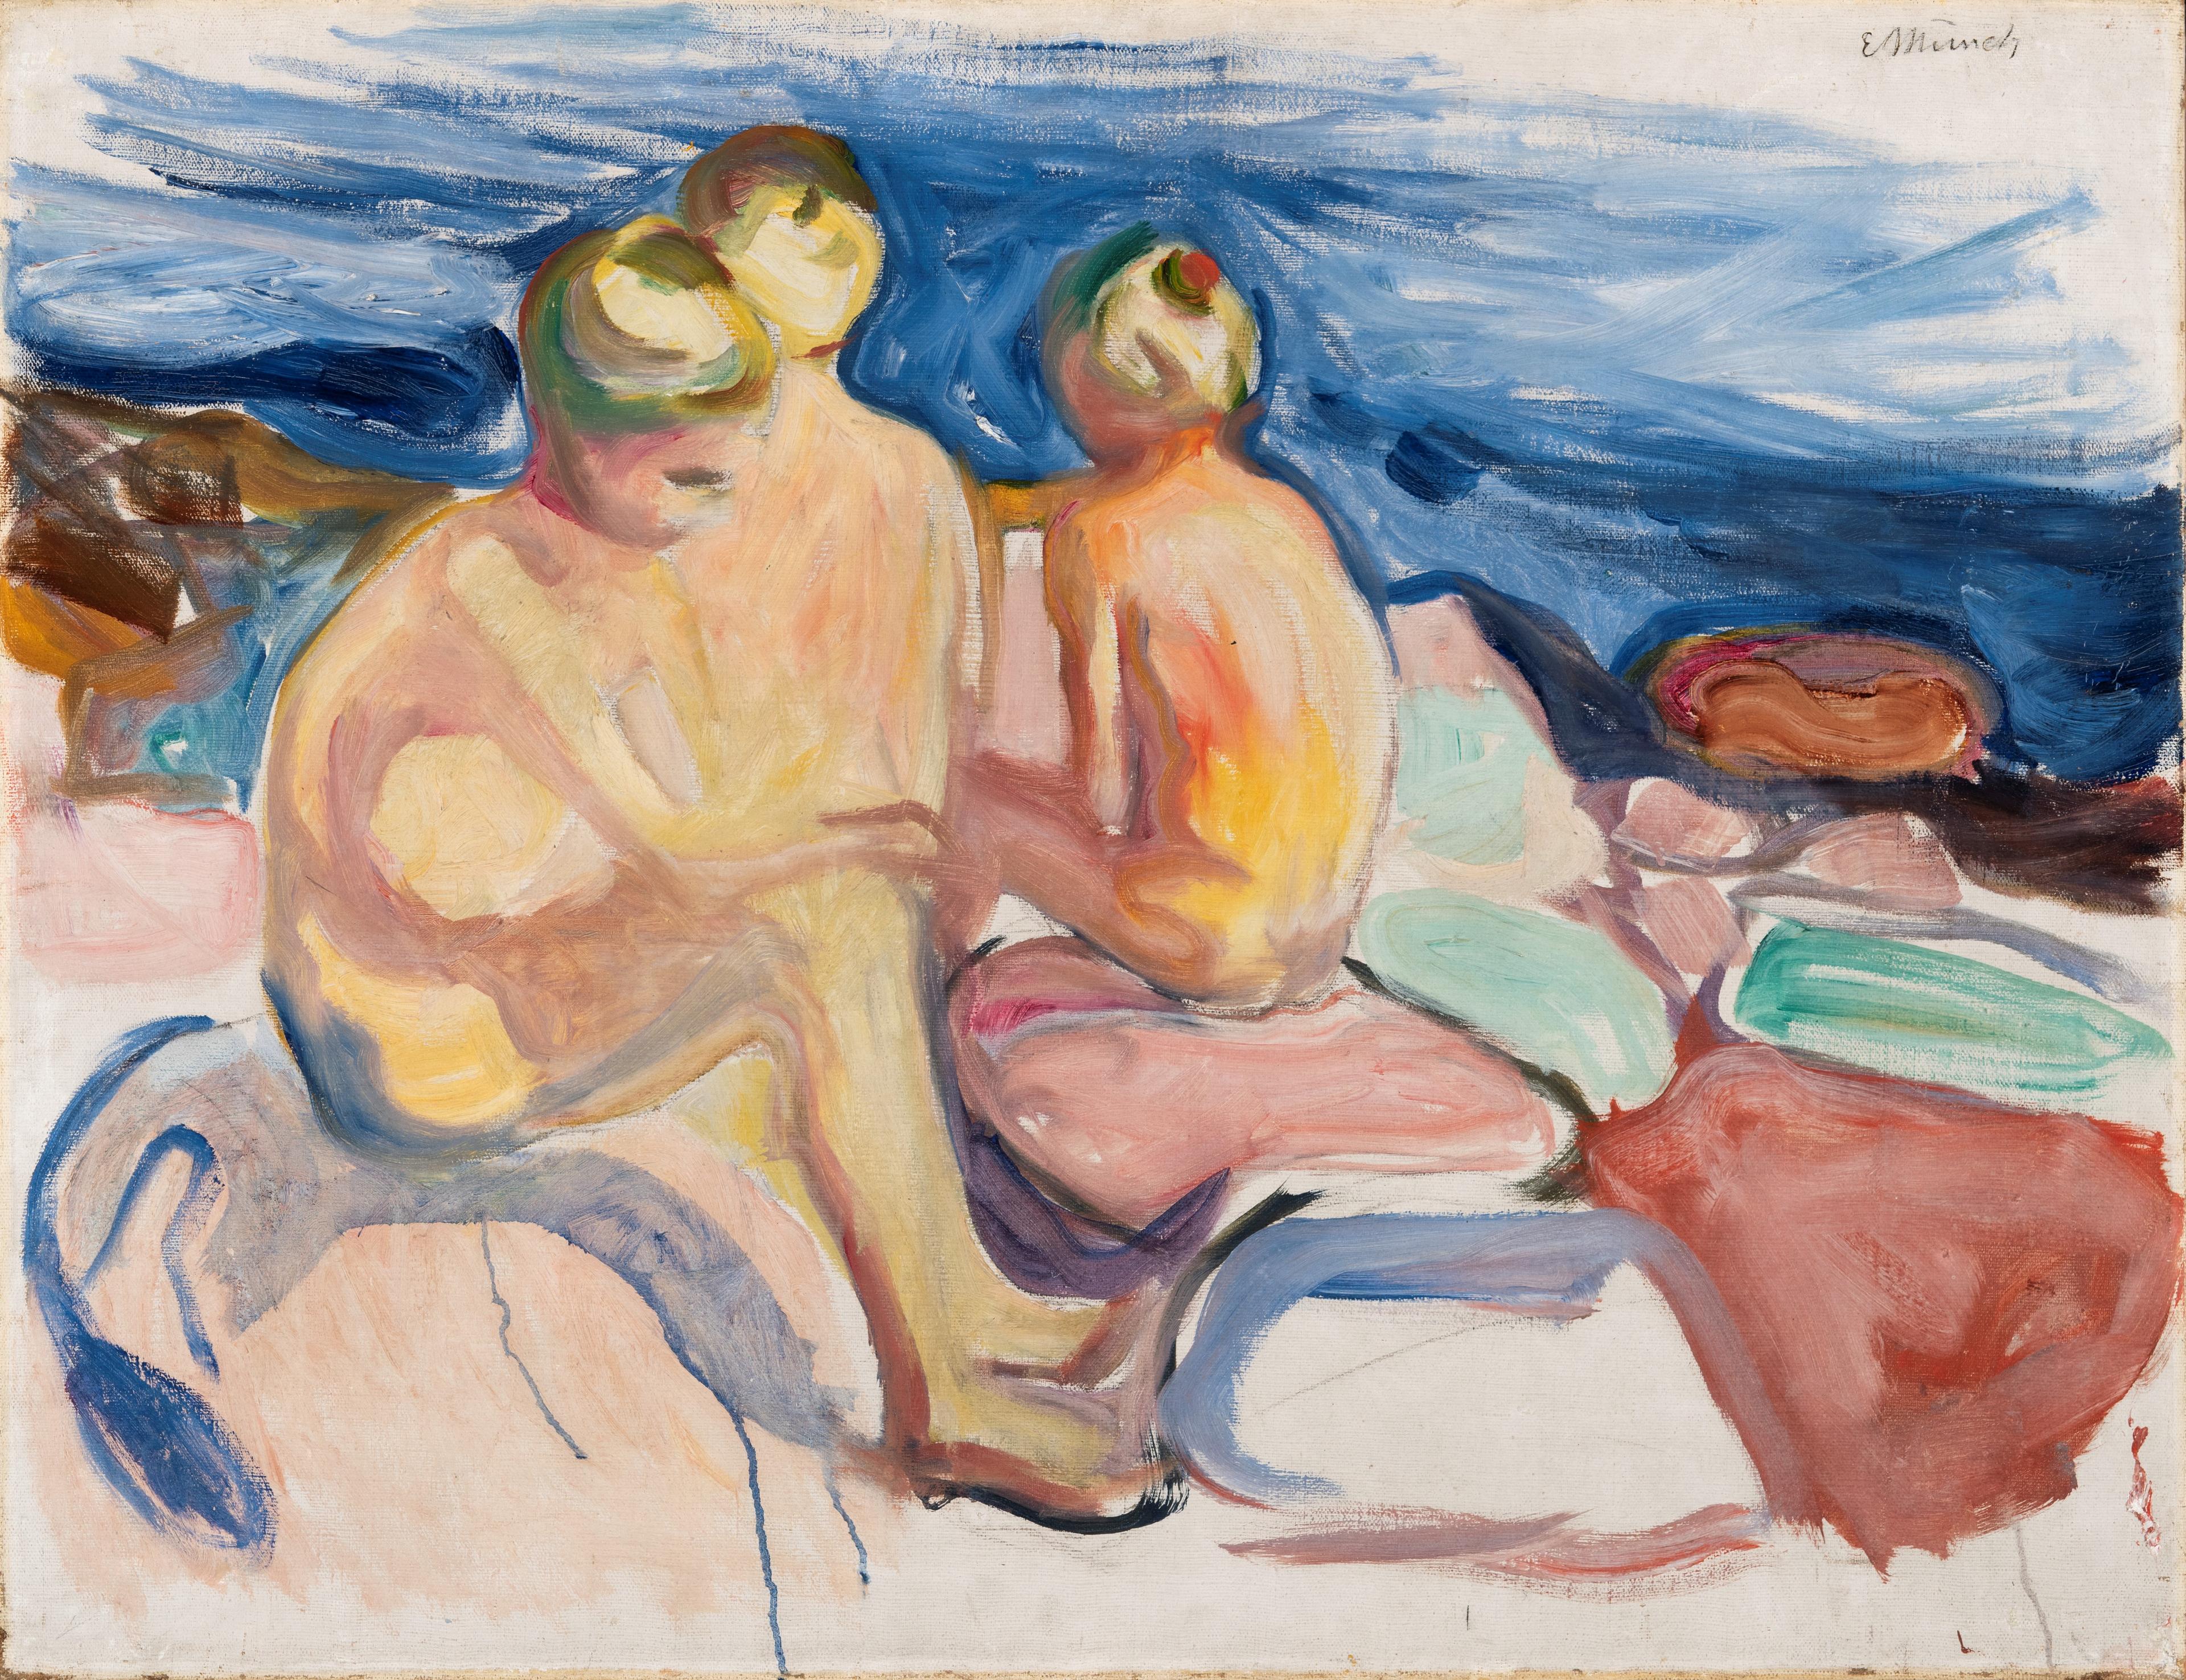 Et maleri av Edvard Munch som viser en gruppe nakne unge menn sittende på en strand.